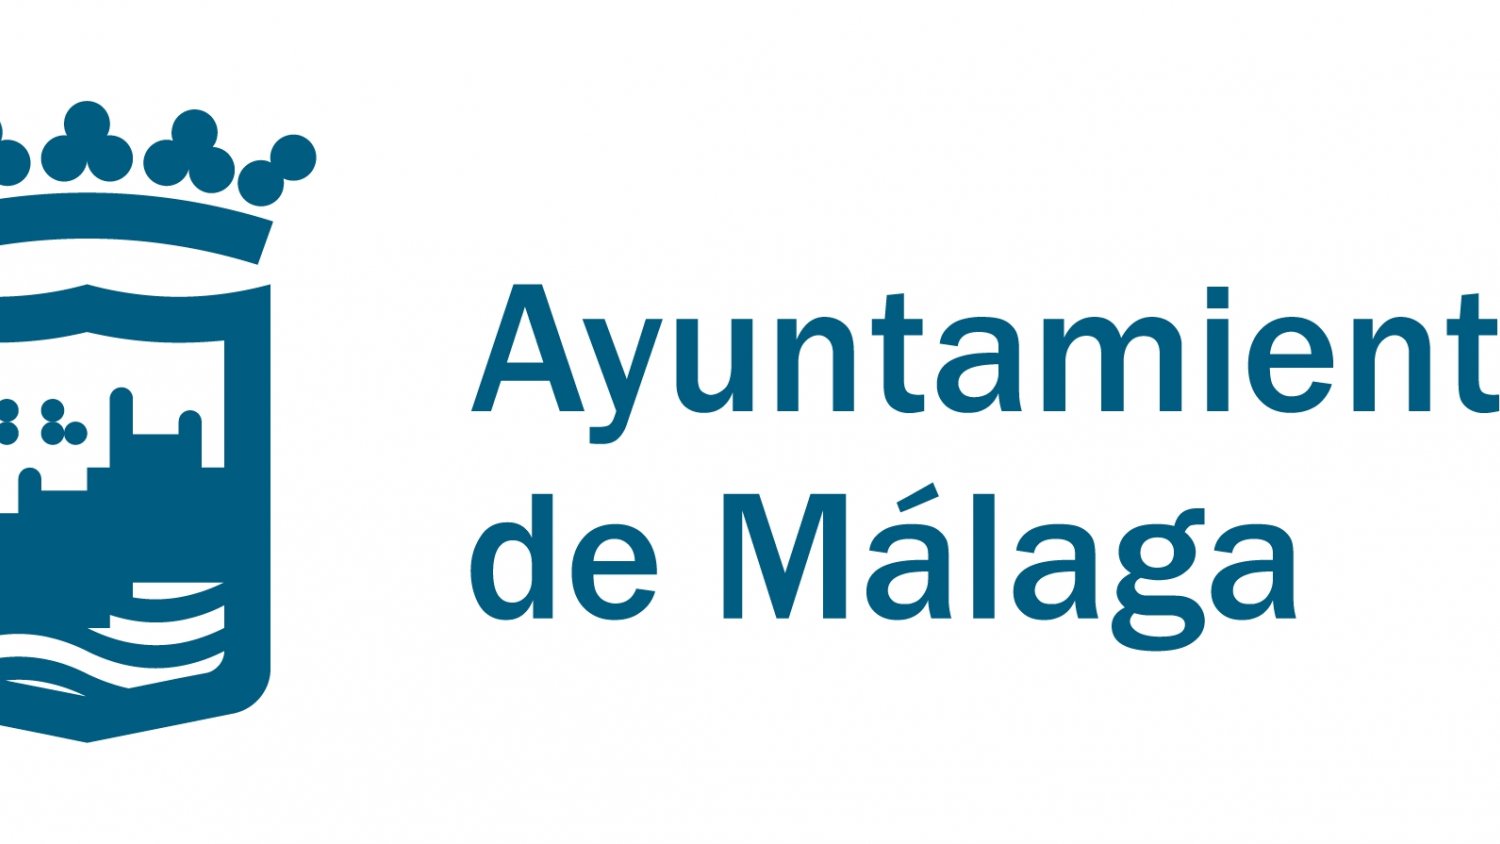 El Ayuntamiento abre el plazo para elegir el nuevo cartel de la Feria de Málaga 2019, el ganador recibirá 3.600 euros